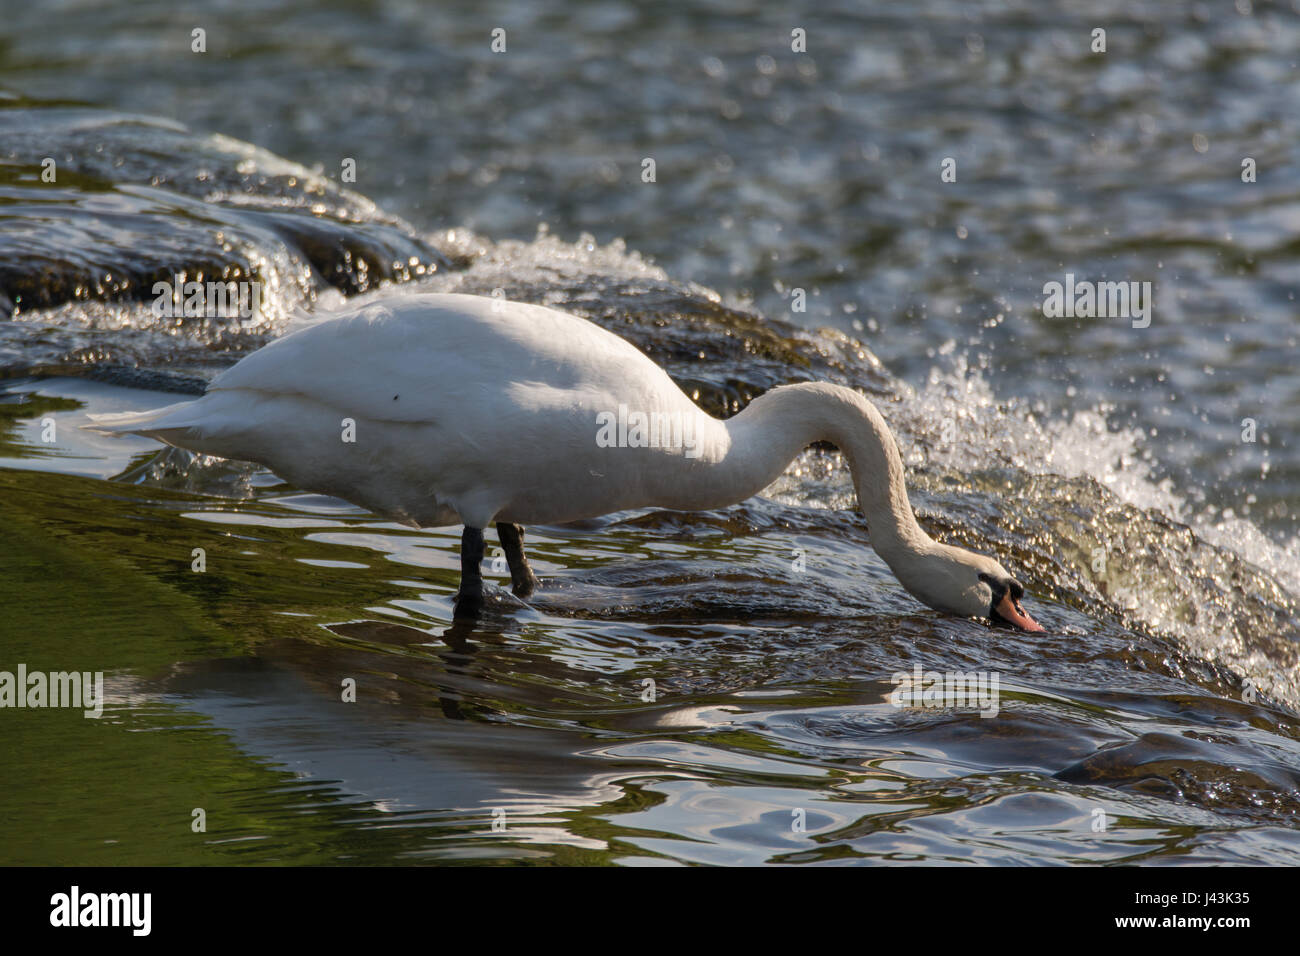 Mute swan (Cygnus olor) se nourrissant de haut de cascade. Grand mâle pour les invertébrés de nourriture dans les eaux vives sur Weir de rivière Avon, Royaume-Uni Banque D'Images